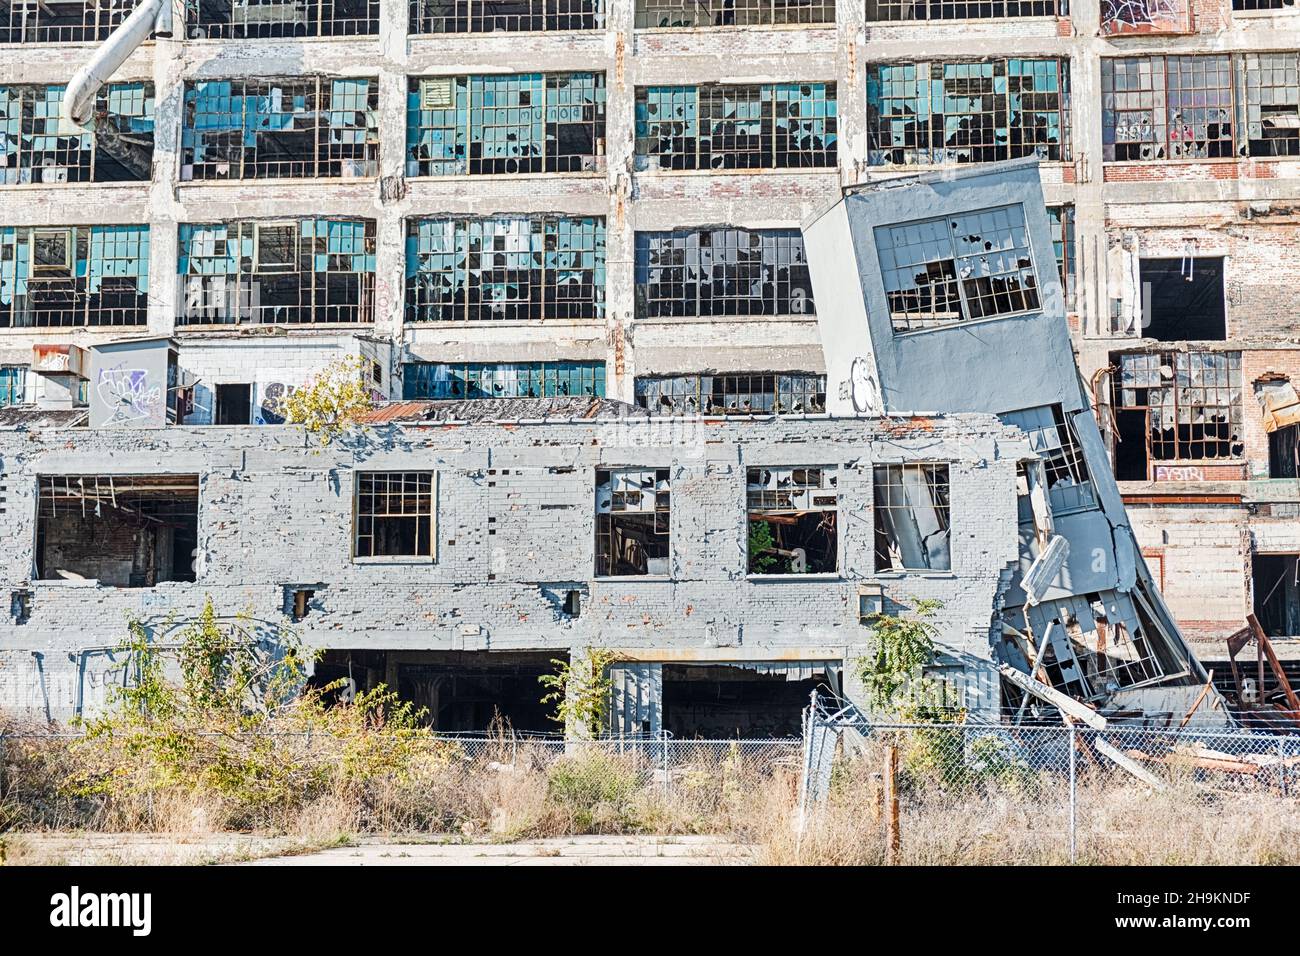 DETROIT, USA - 20 OTTOBRE 2019: Il muro della vecchia fabbrica Fisher Body Works di Detroit è stato dipinto di un colore grigio per nascondere i graffiti. Foto Stock